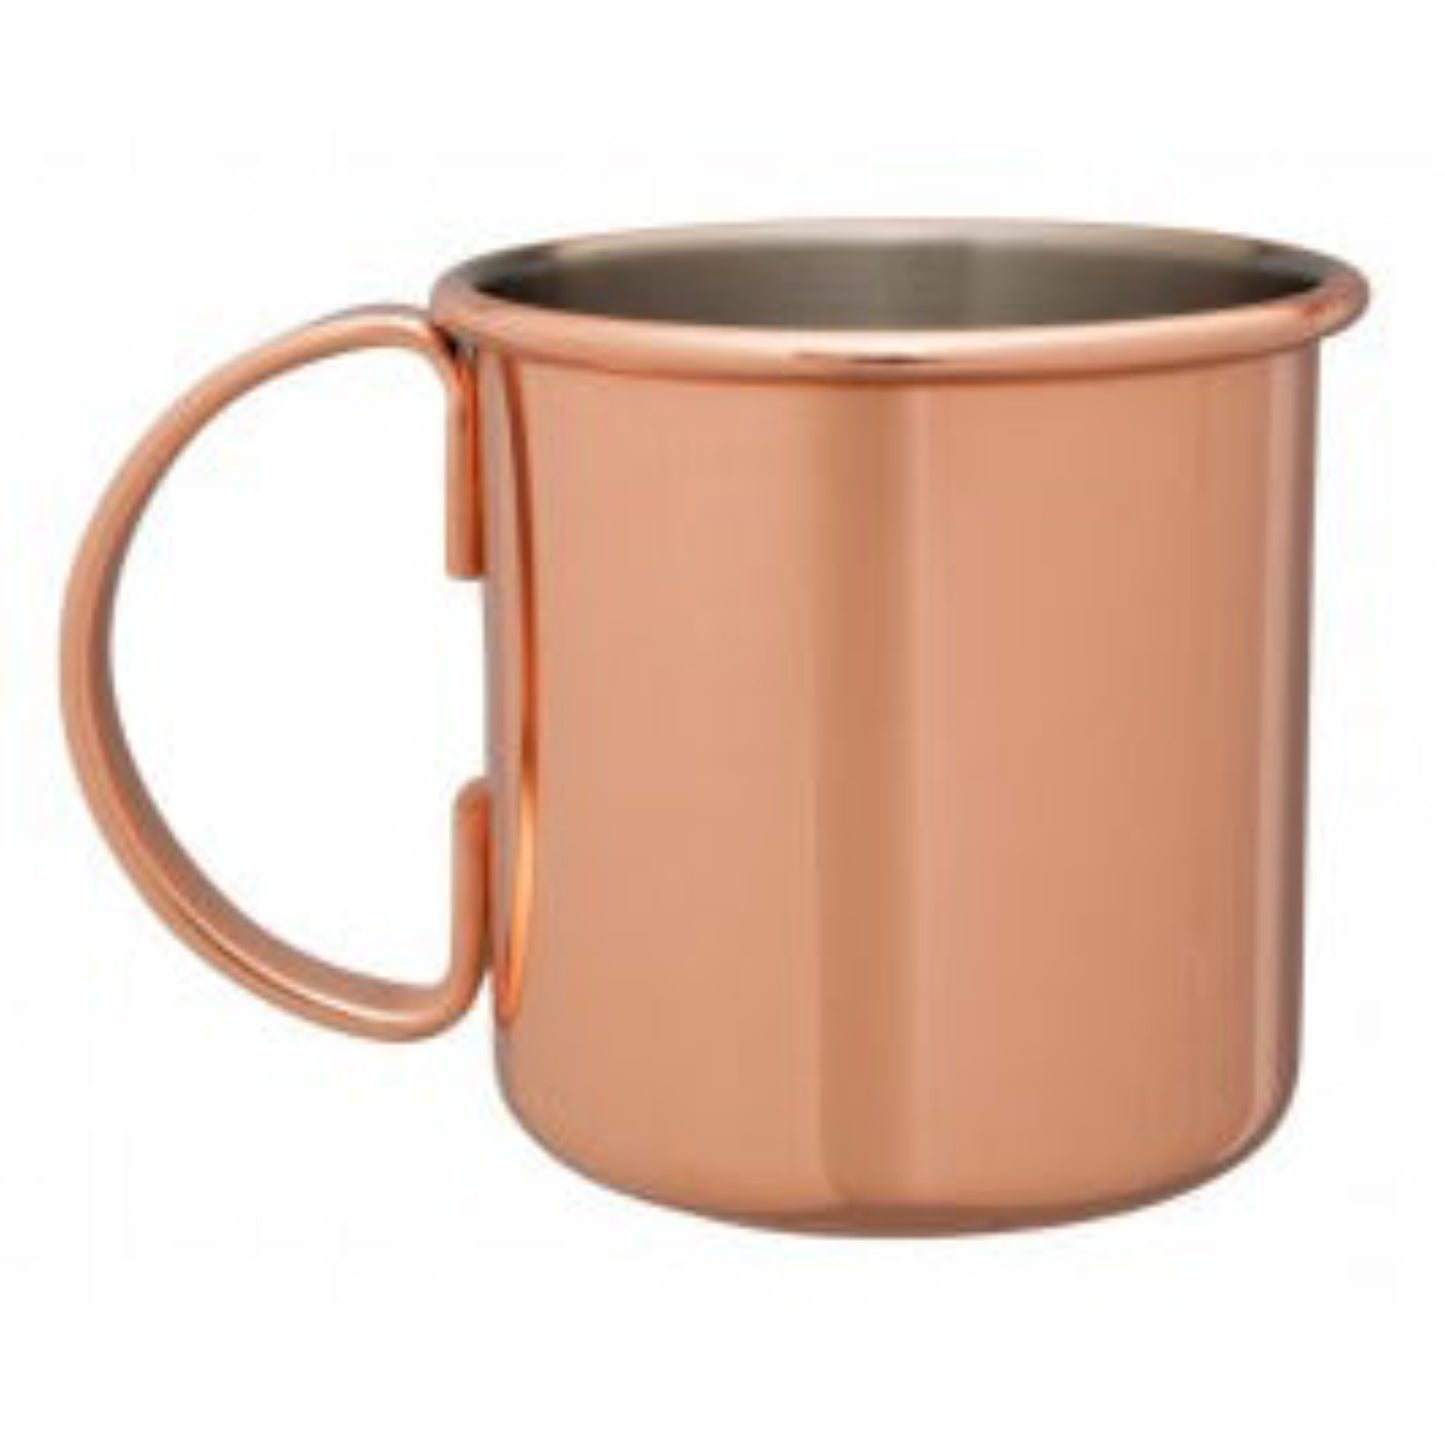 Beaumont Handled Copper Mug 500ml 135(H) x 98(ƒË)